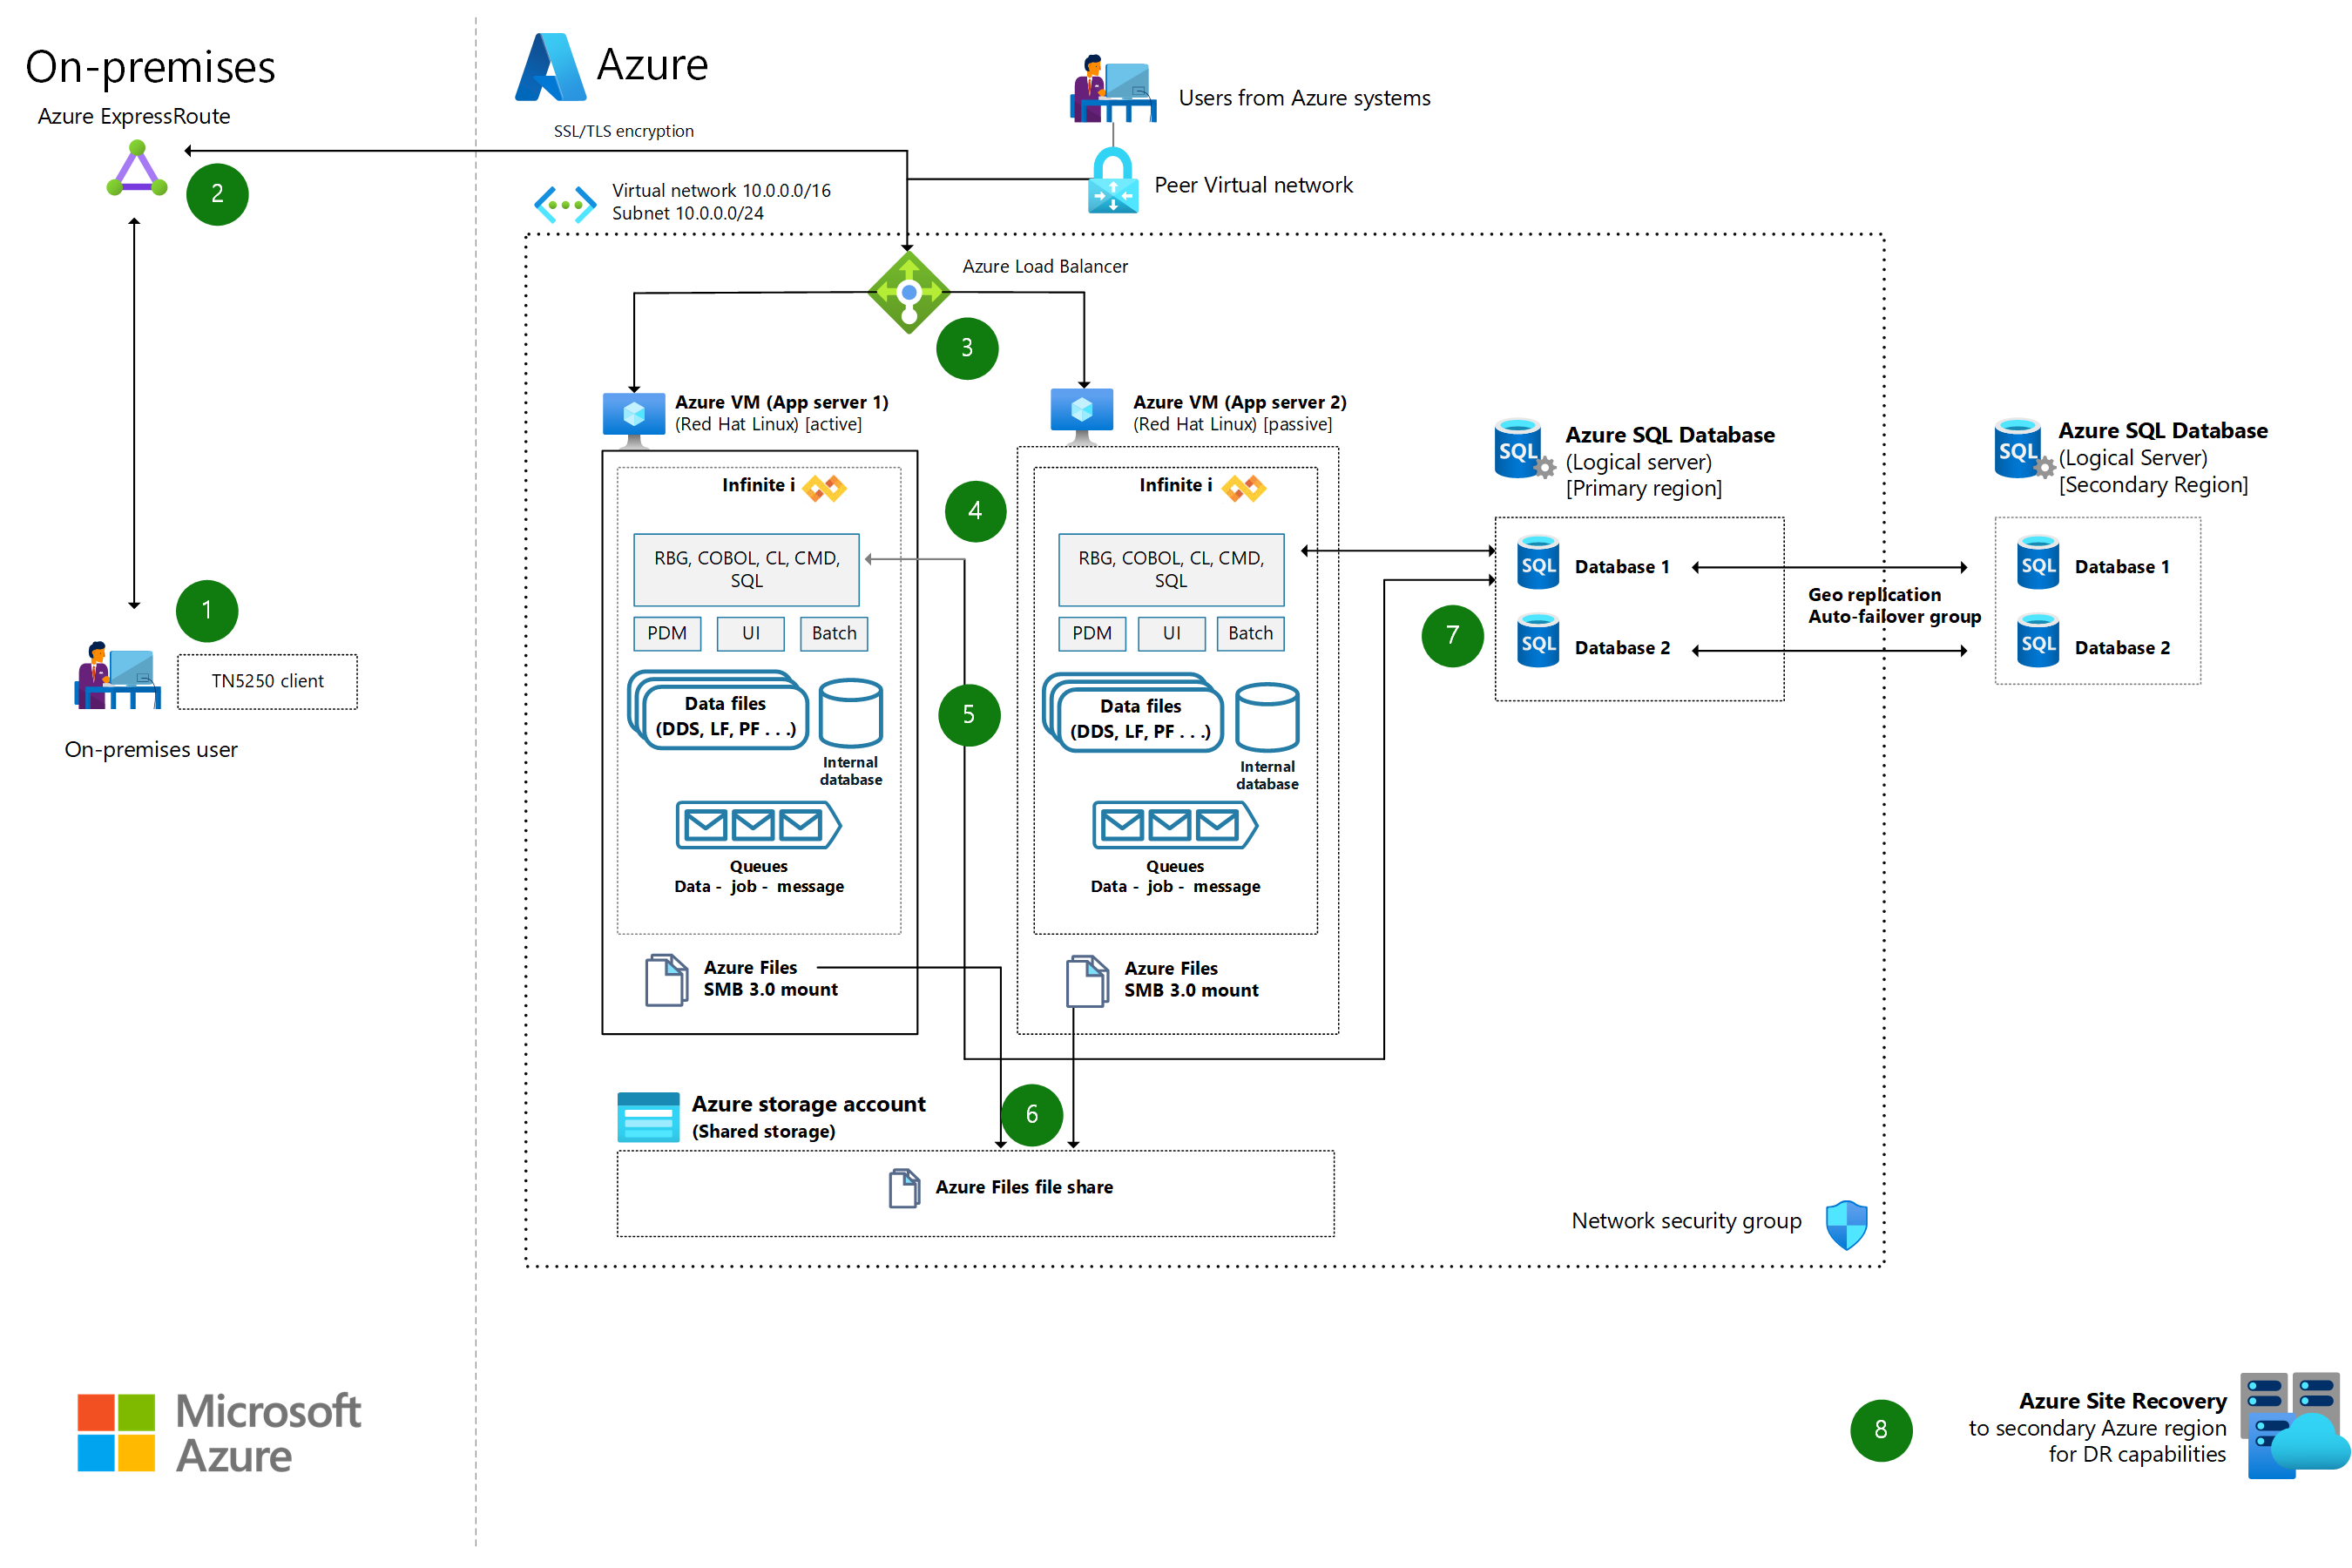 Эскиз IBM System i (AS/400) в Azure с помощью архитектурной схемы Infinite i.